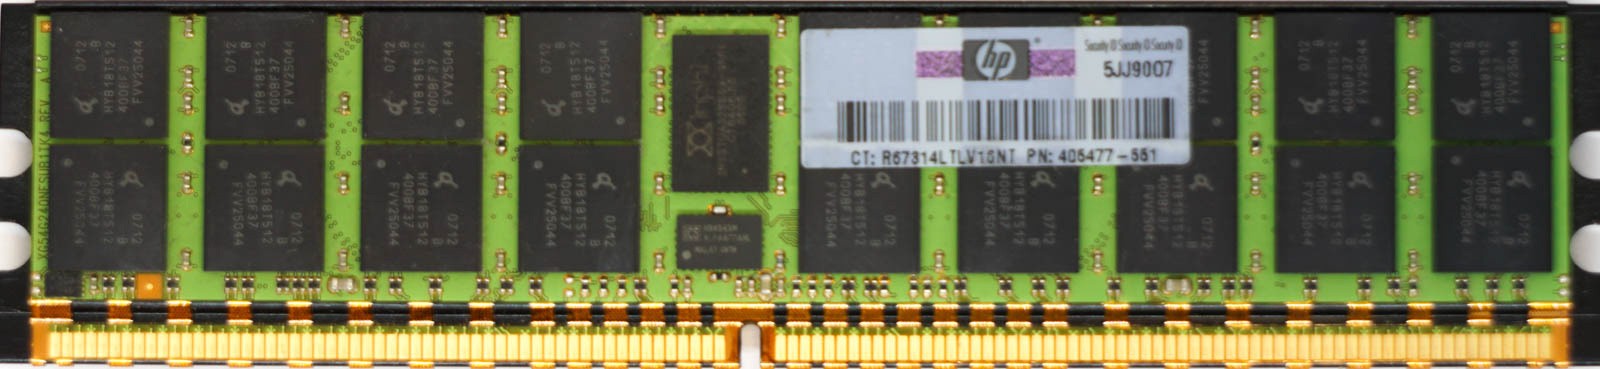 HP (405477-551) - 4GB PC2-4200R (DDR2-533Mhz, 4RX4)